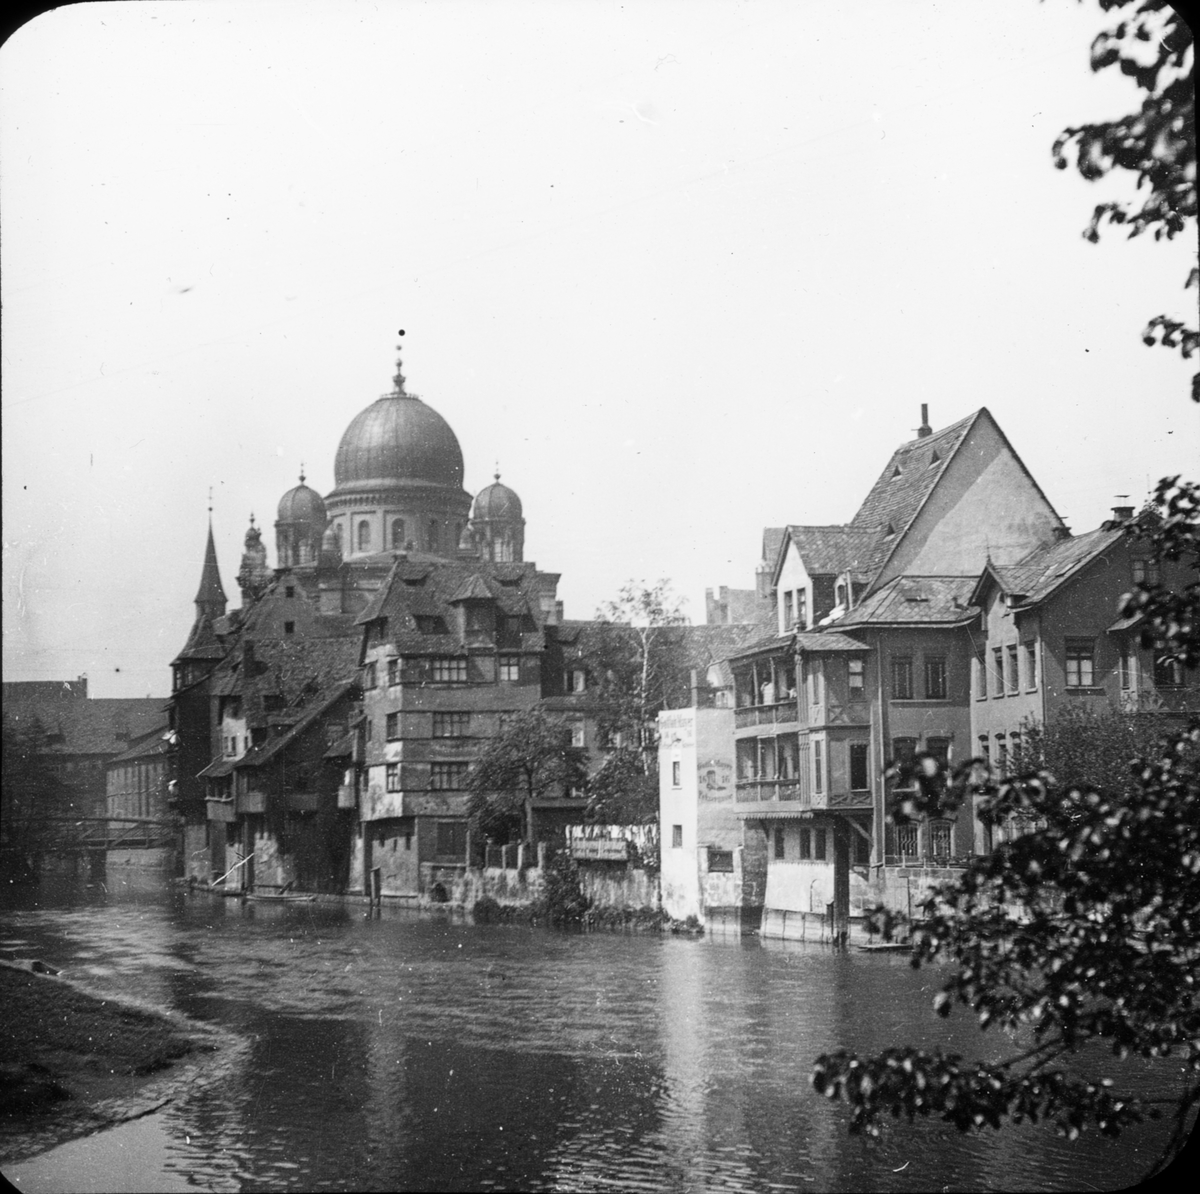 Skioptikonbild med motiv från Nürnberg, hus vid floden Pegnitz. Byggnaden med kupolerna är den stora Synagogan.
Bilden har förvarats i kartong märkt: Nürnberg. IV.